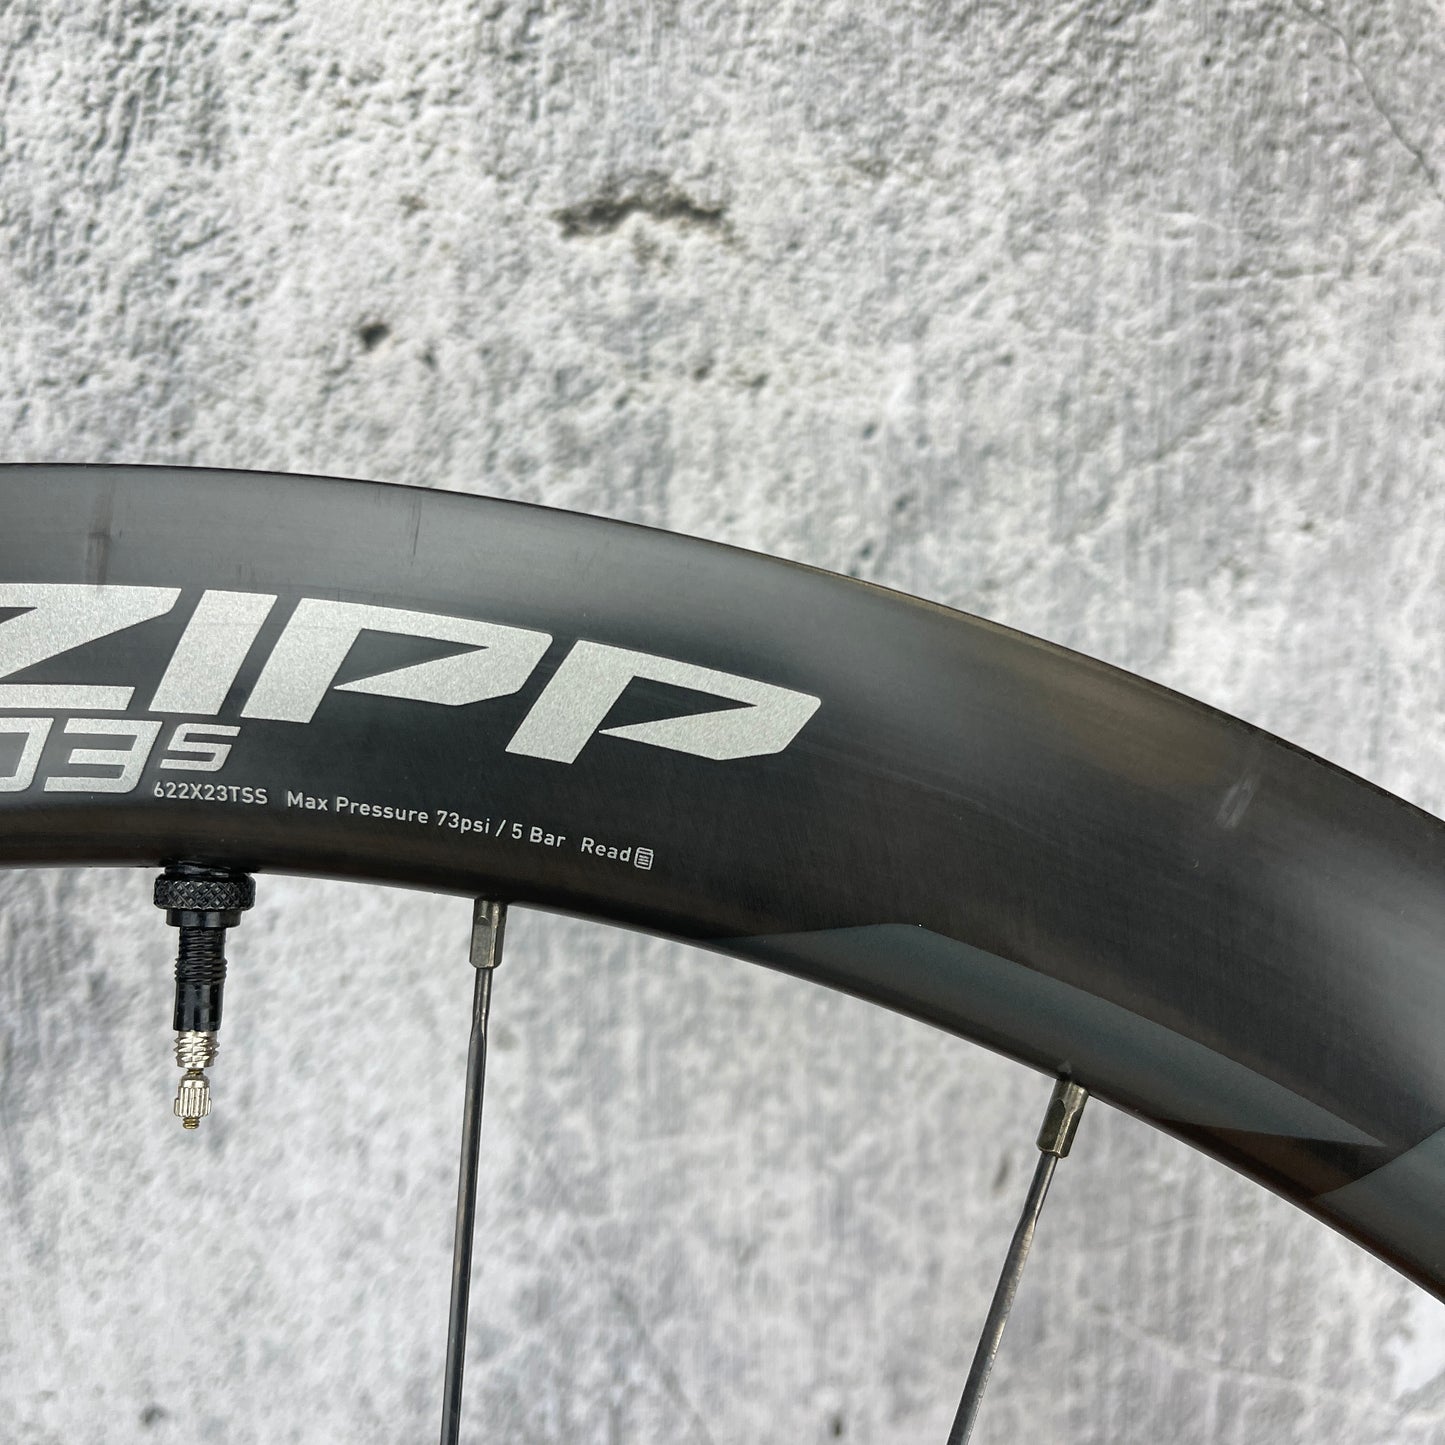 Zipp 303s Carbon Tubeless Hookless Road Bike Wheelset 700c Disc Brake 1537g